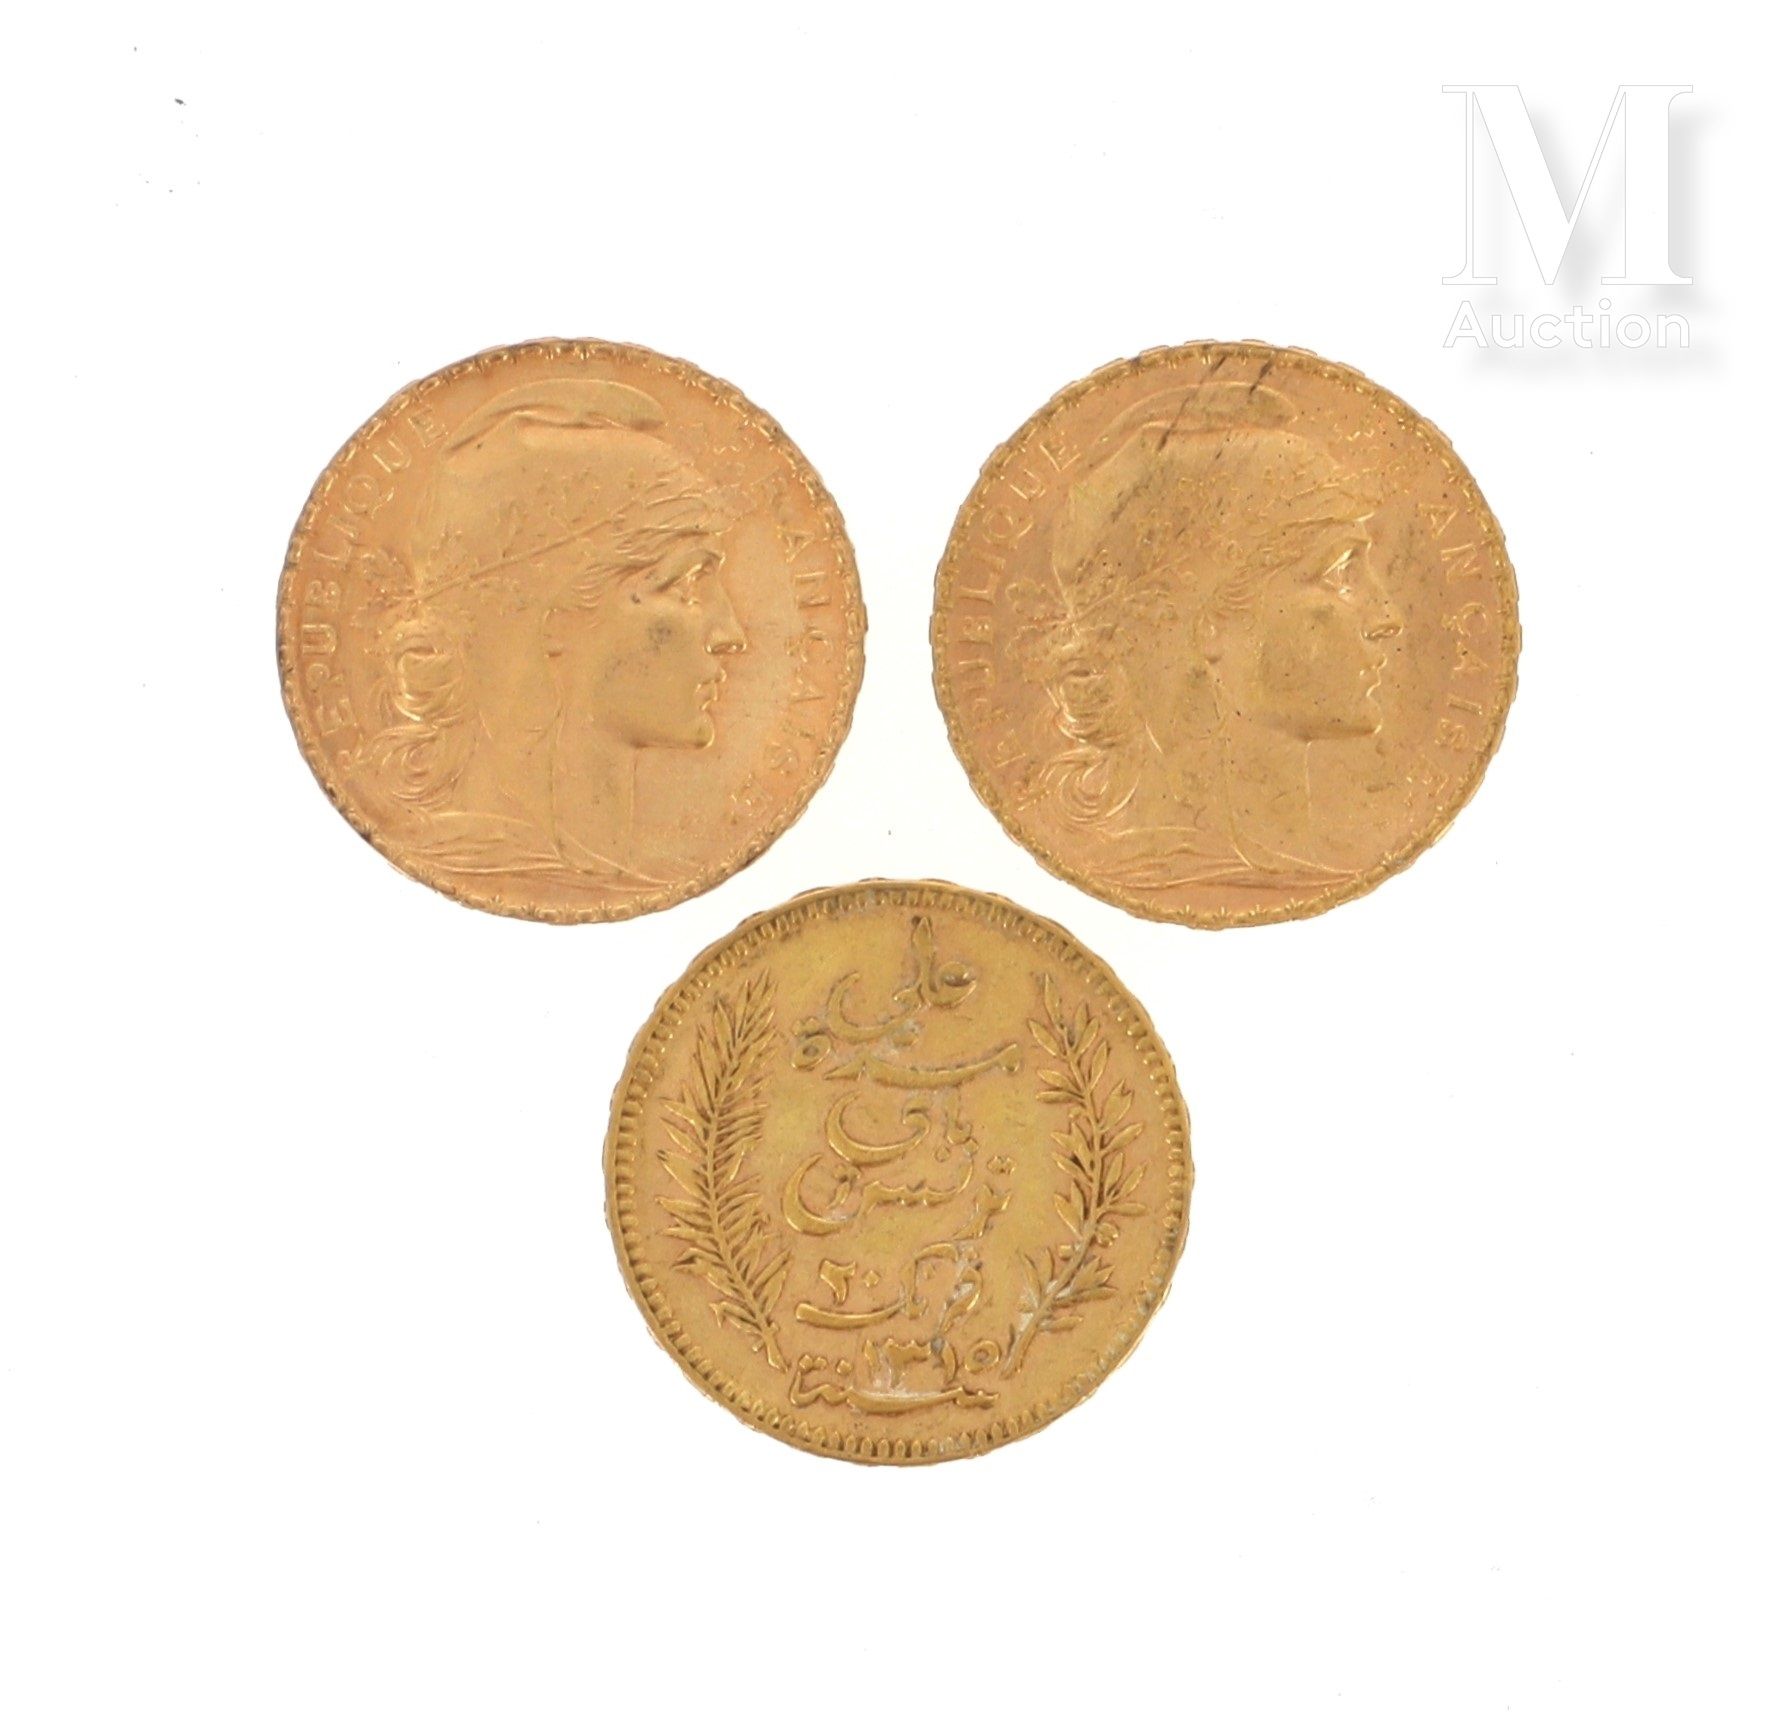 Trois pièces 20 FF or Trois pièces en or de 20 FF :

- 2 x 20 FF Coq 1908 et 191&hellip;